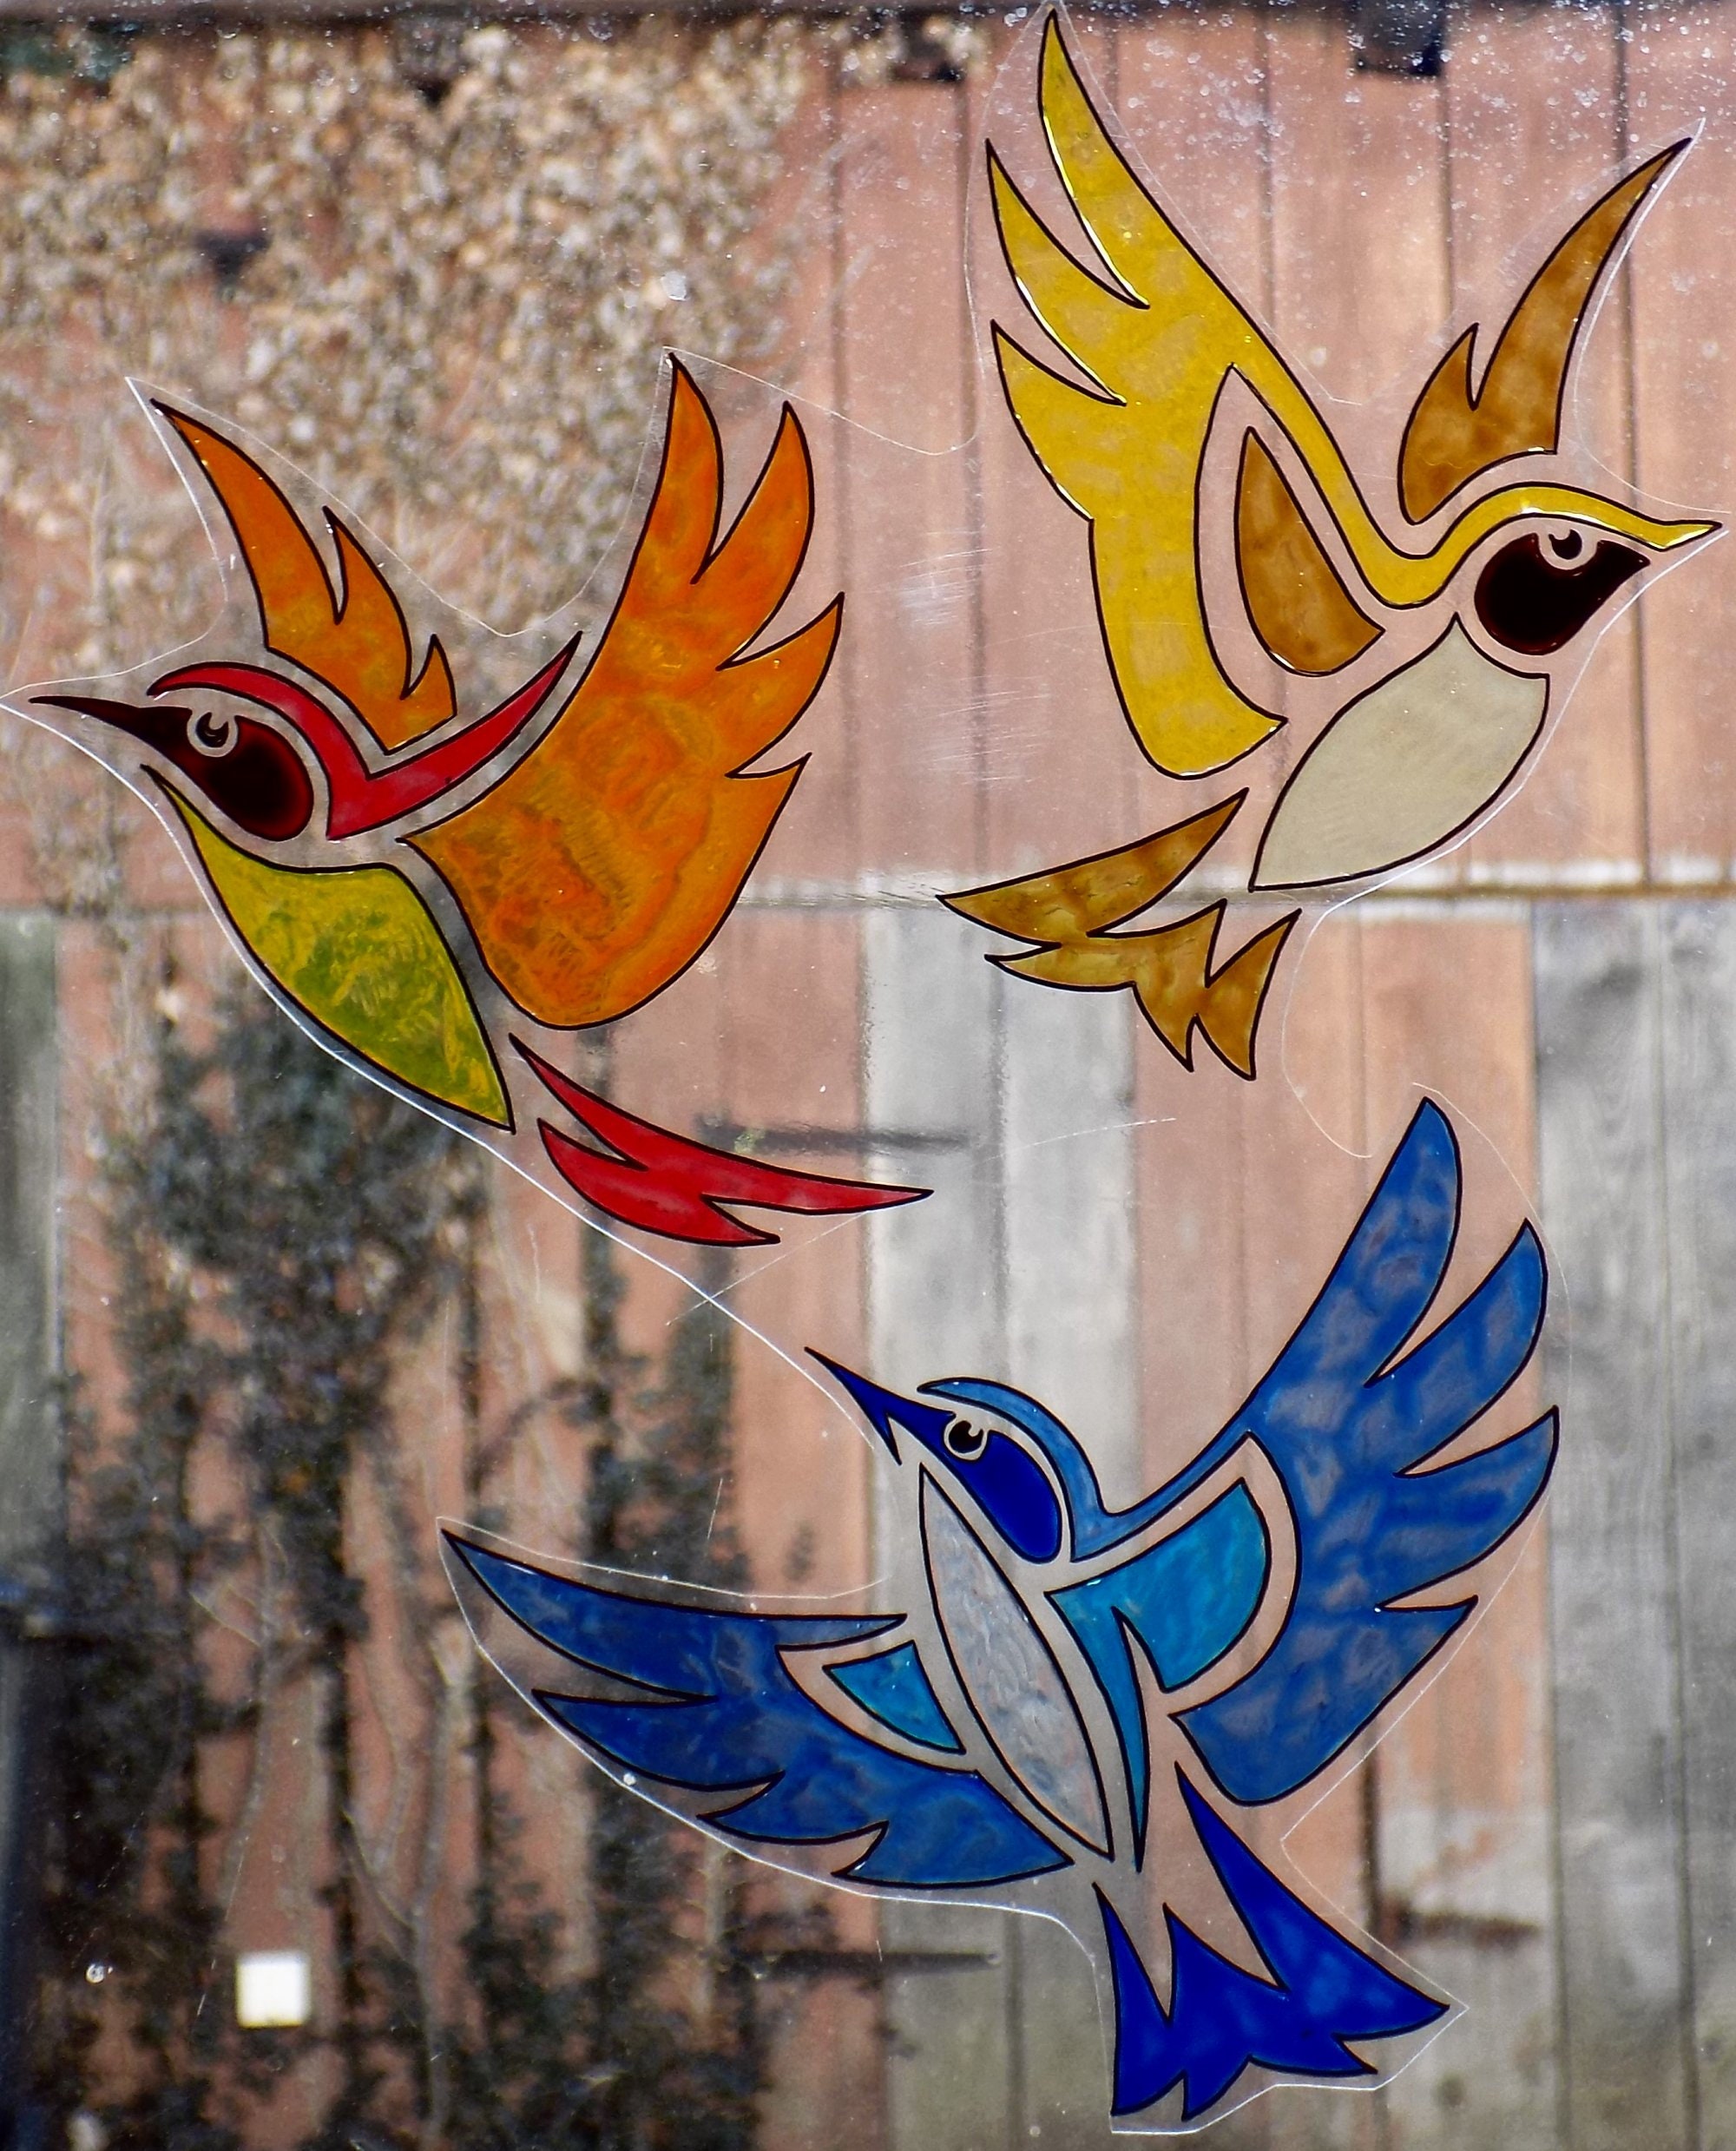 Wicoart Sticker Window Cling Stained Glass Art Lot 3 Petits Oiseaux